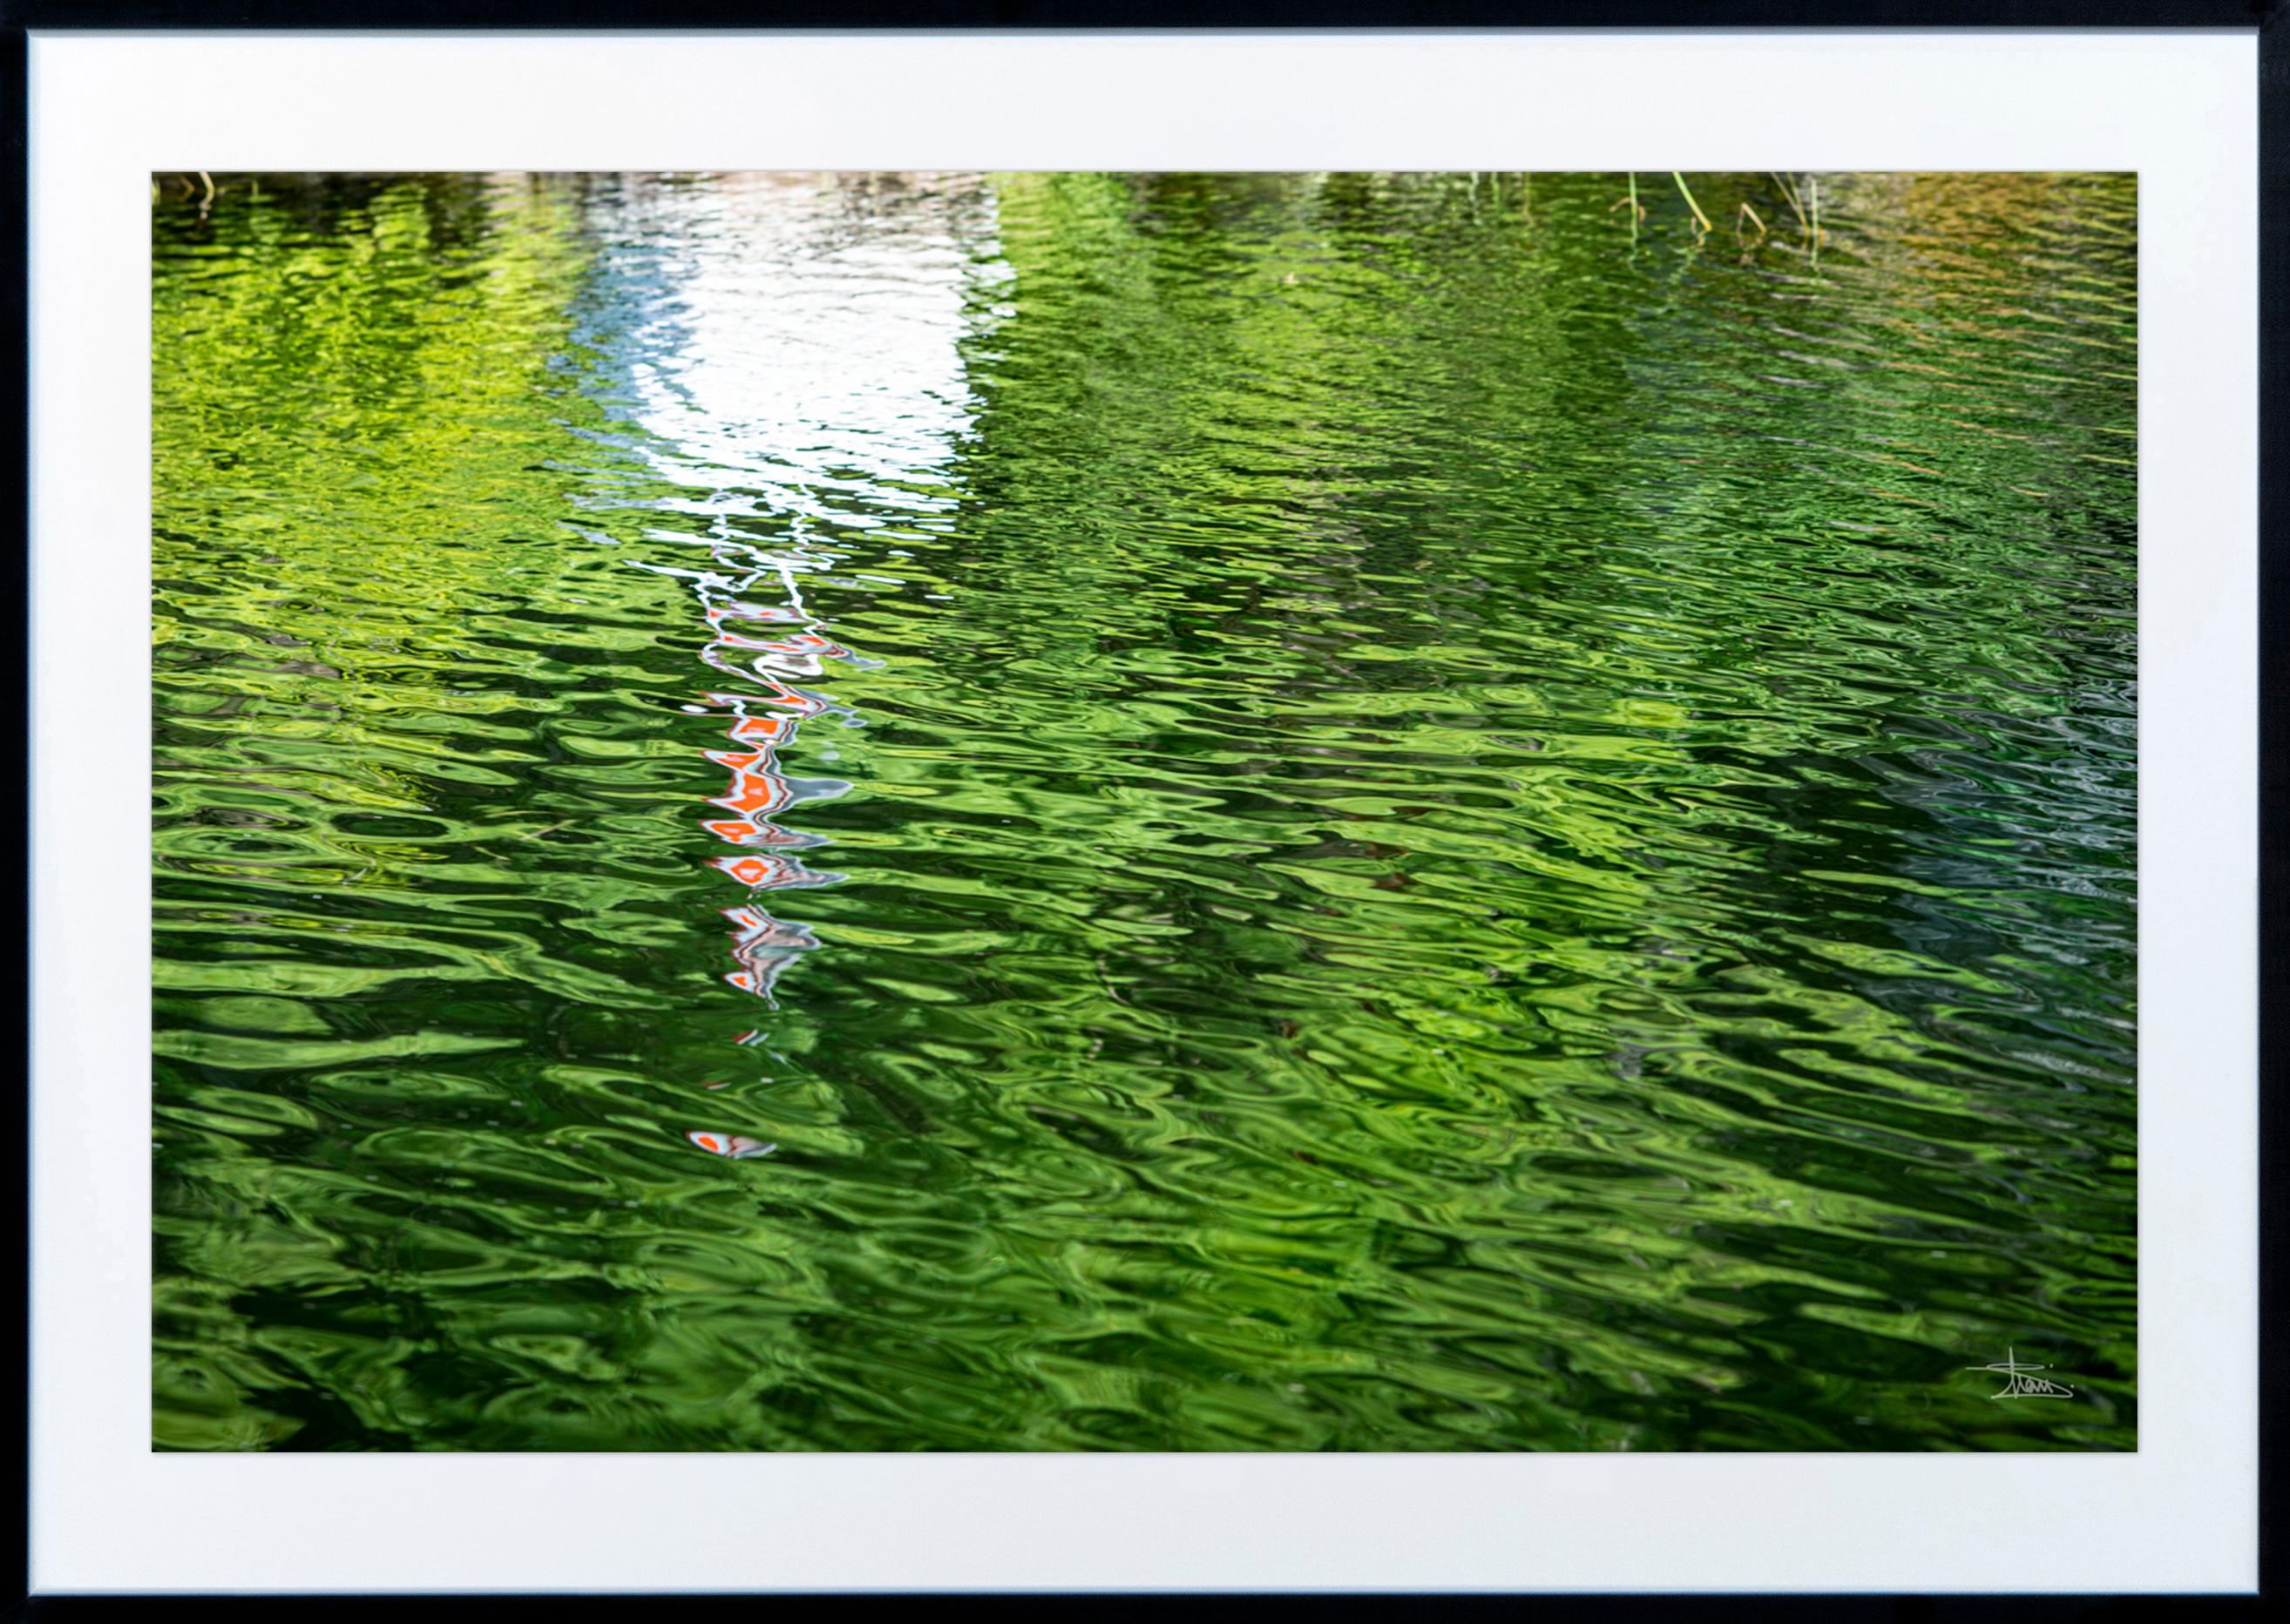 Lac Opinicon 1/8 - paysage abstrait, photographie couleur, impression giclée - Photograph de Shani Mootoo